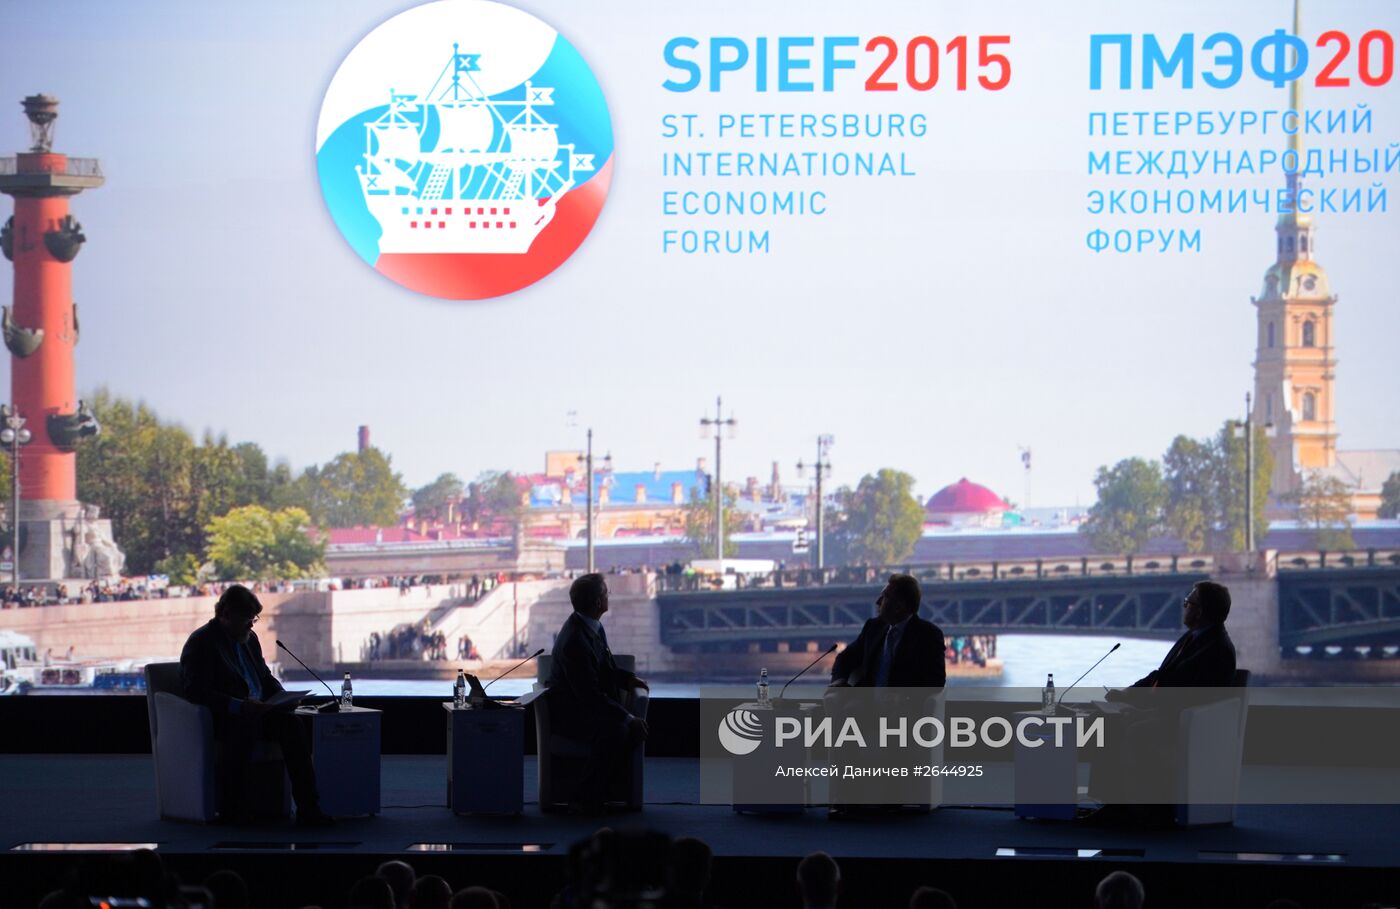 Панельная сессия "Экономика: честные ответы на злободневные вопросы" в рамках ПМЭФ 2015